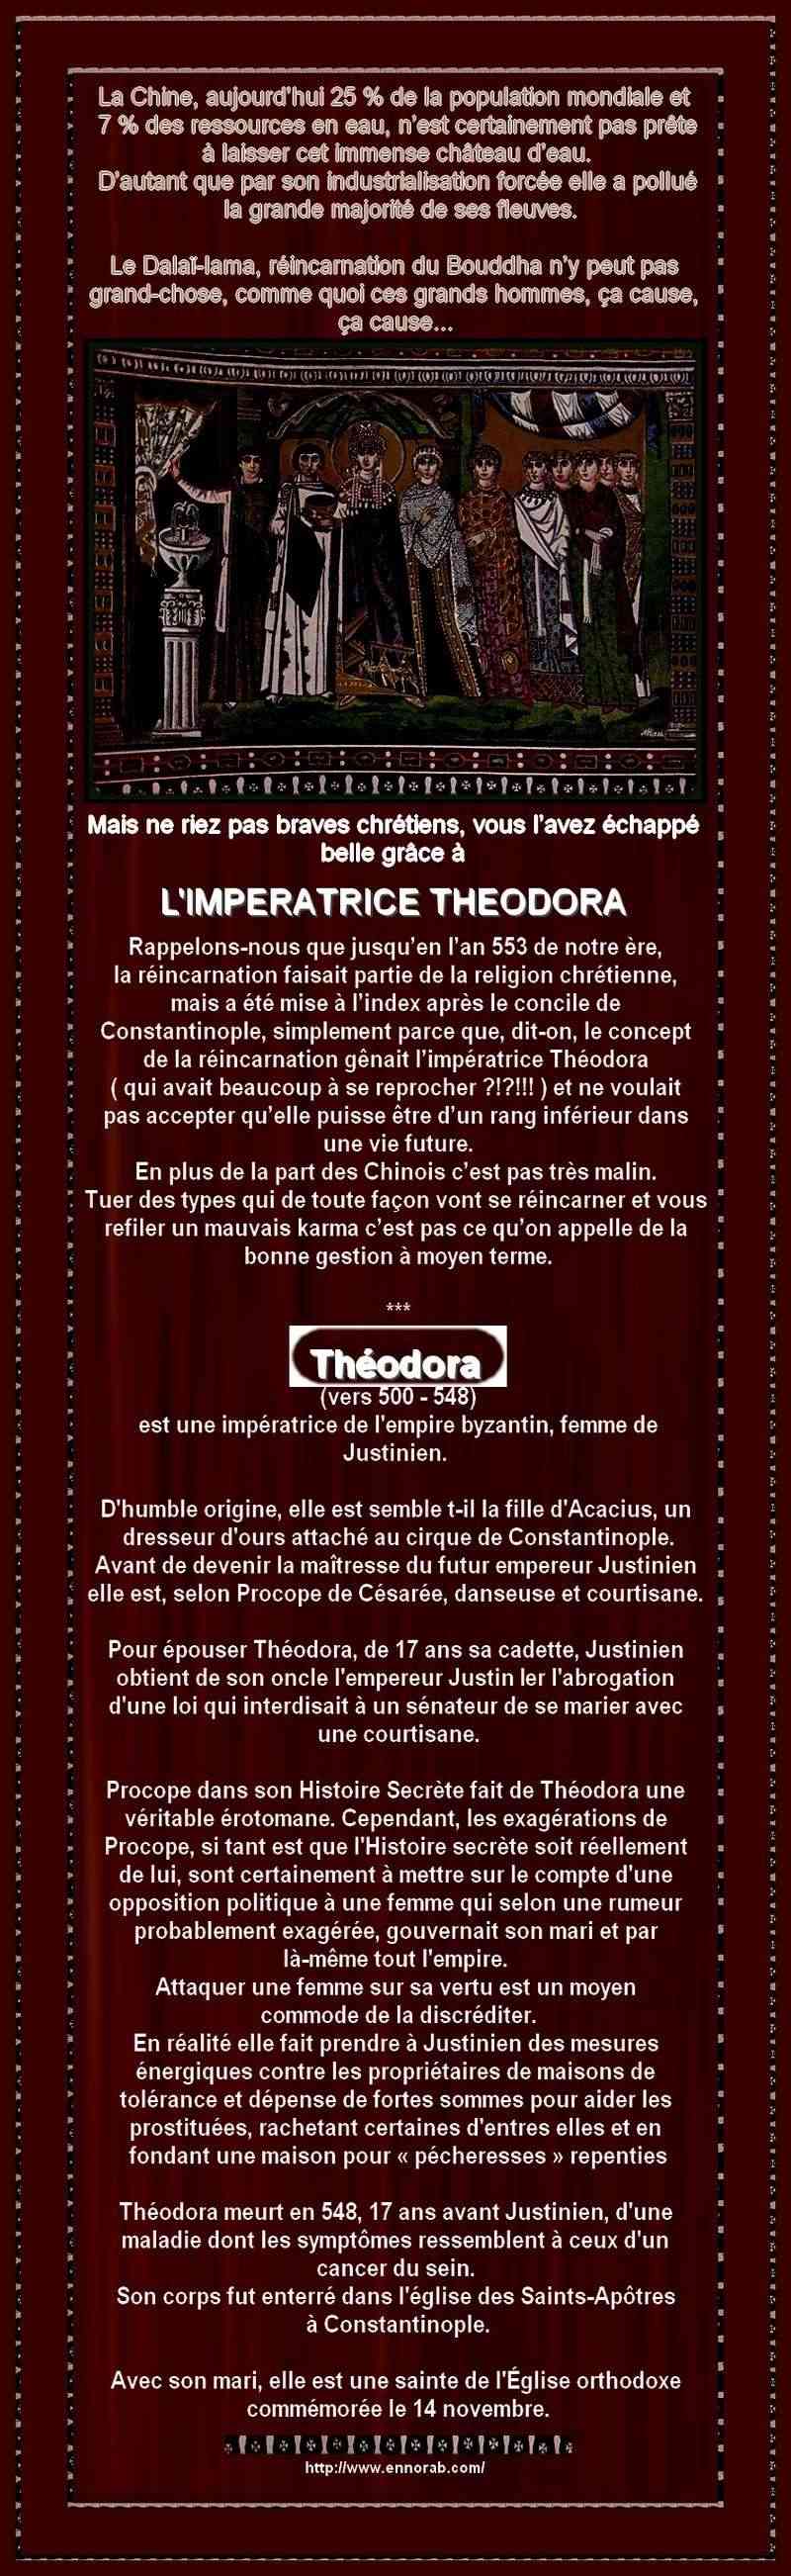 L'IMPERATRICE THEODORA ET LA REINCARNATION QUI FAISAIT PARTIE DE LA CHRETIENTE   044xa57